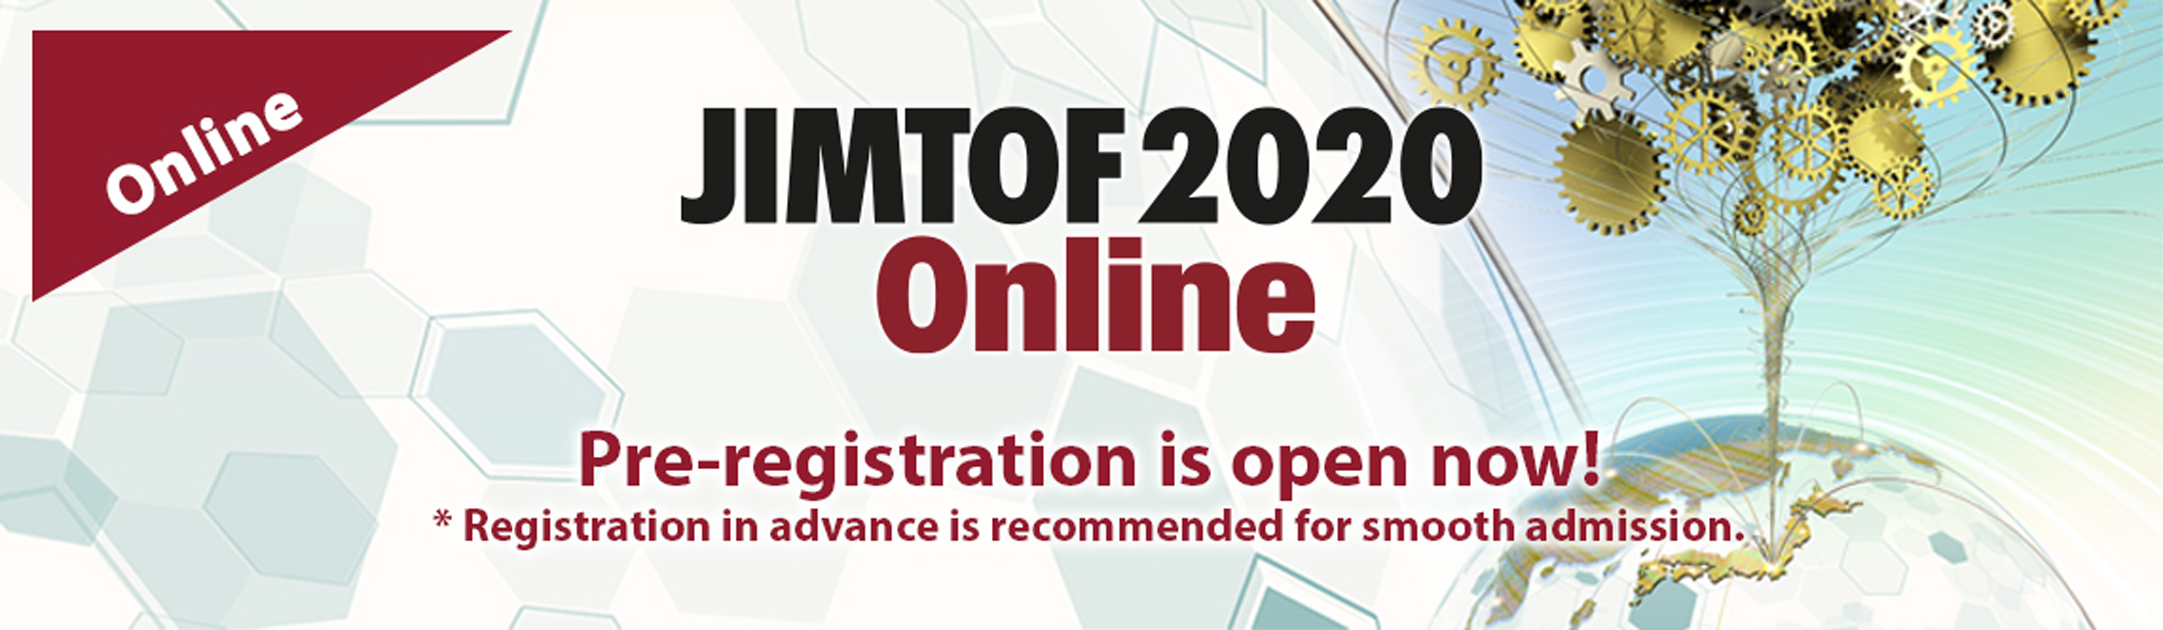 JIMTOF 2020 Online Banner